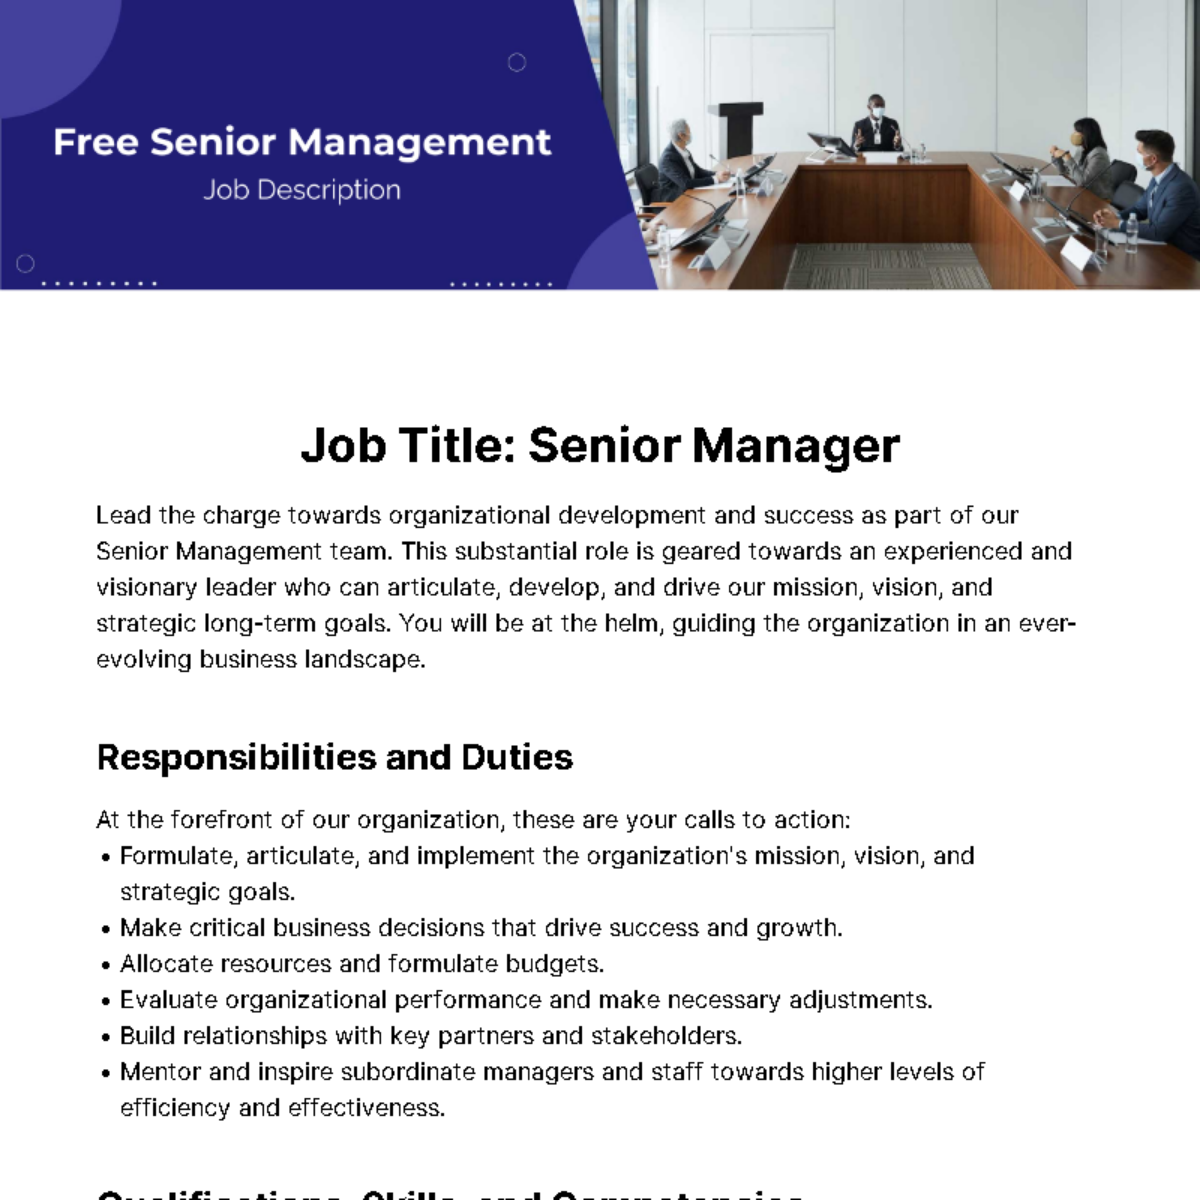 Free Senior Management Job Description Template